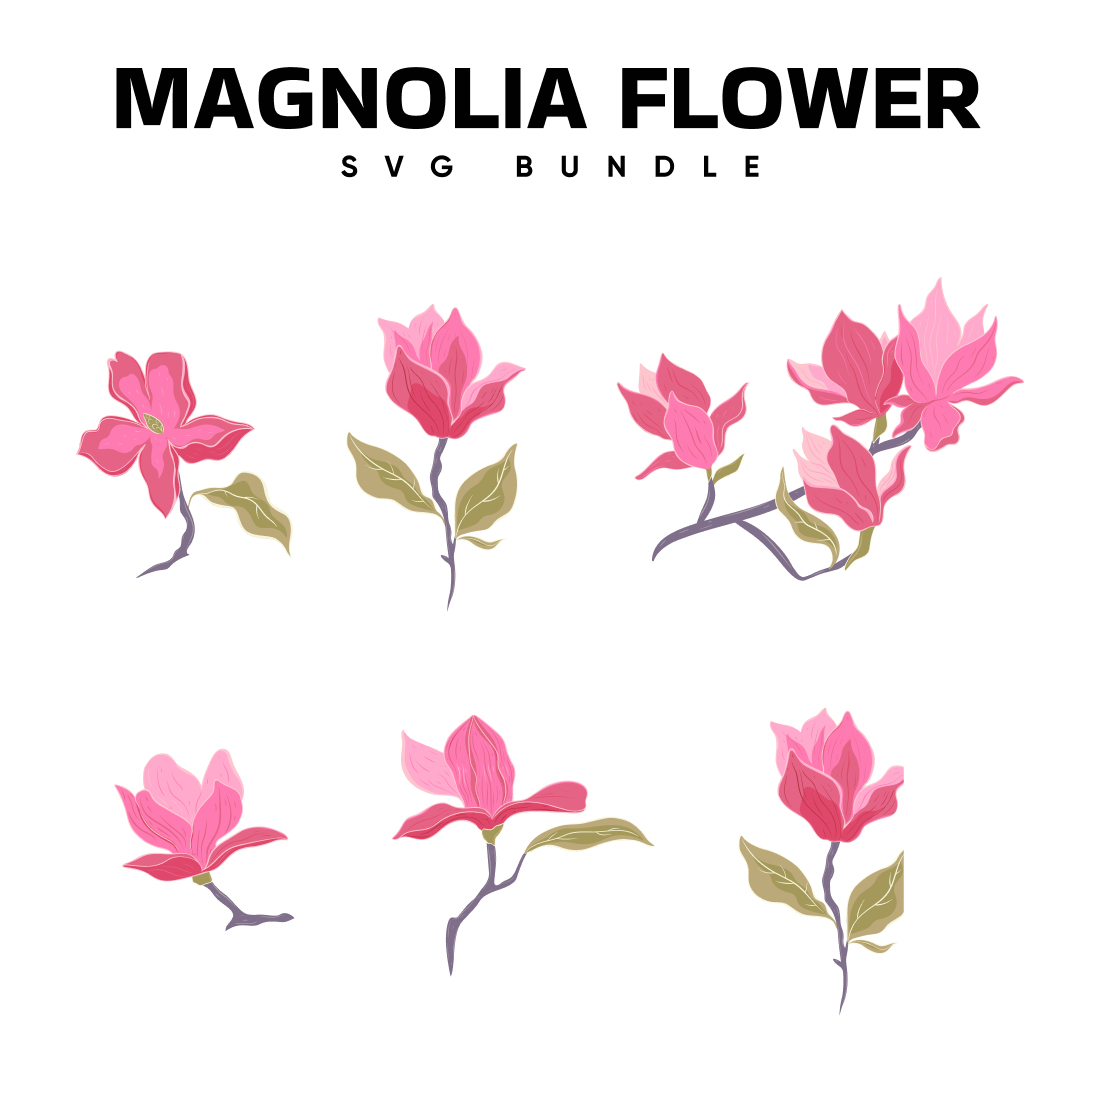 Magnolia Flower SVG.